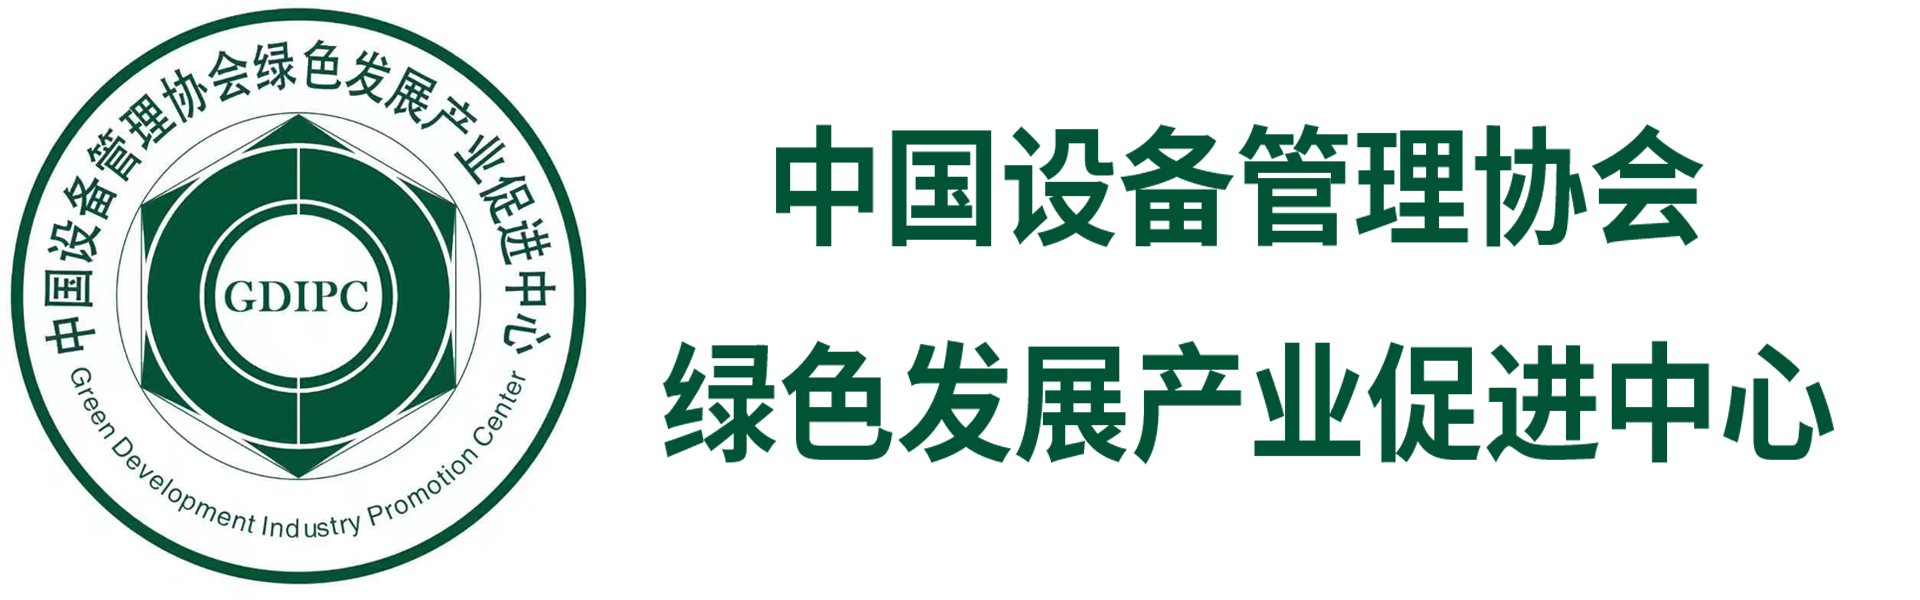 中国设备管理协会绿色发展产业促进中心 - 中国设备管理协会绿色发展产业促进中心